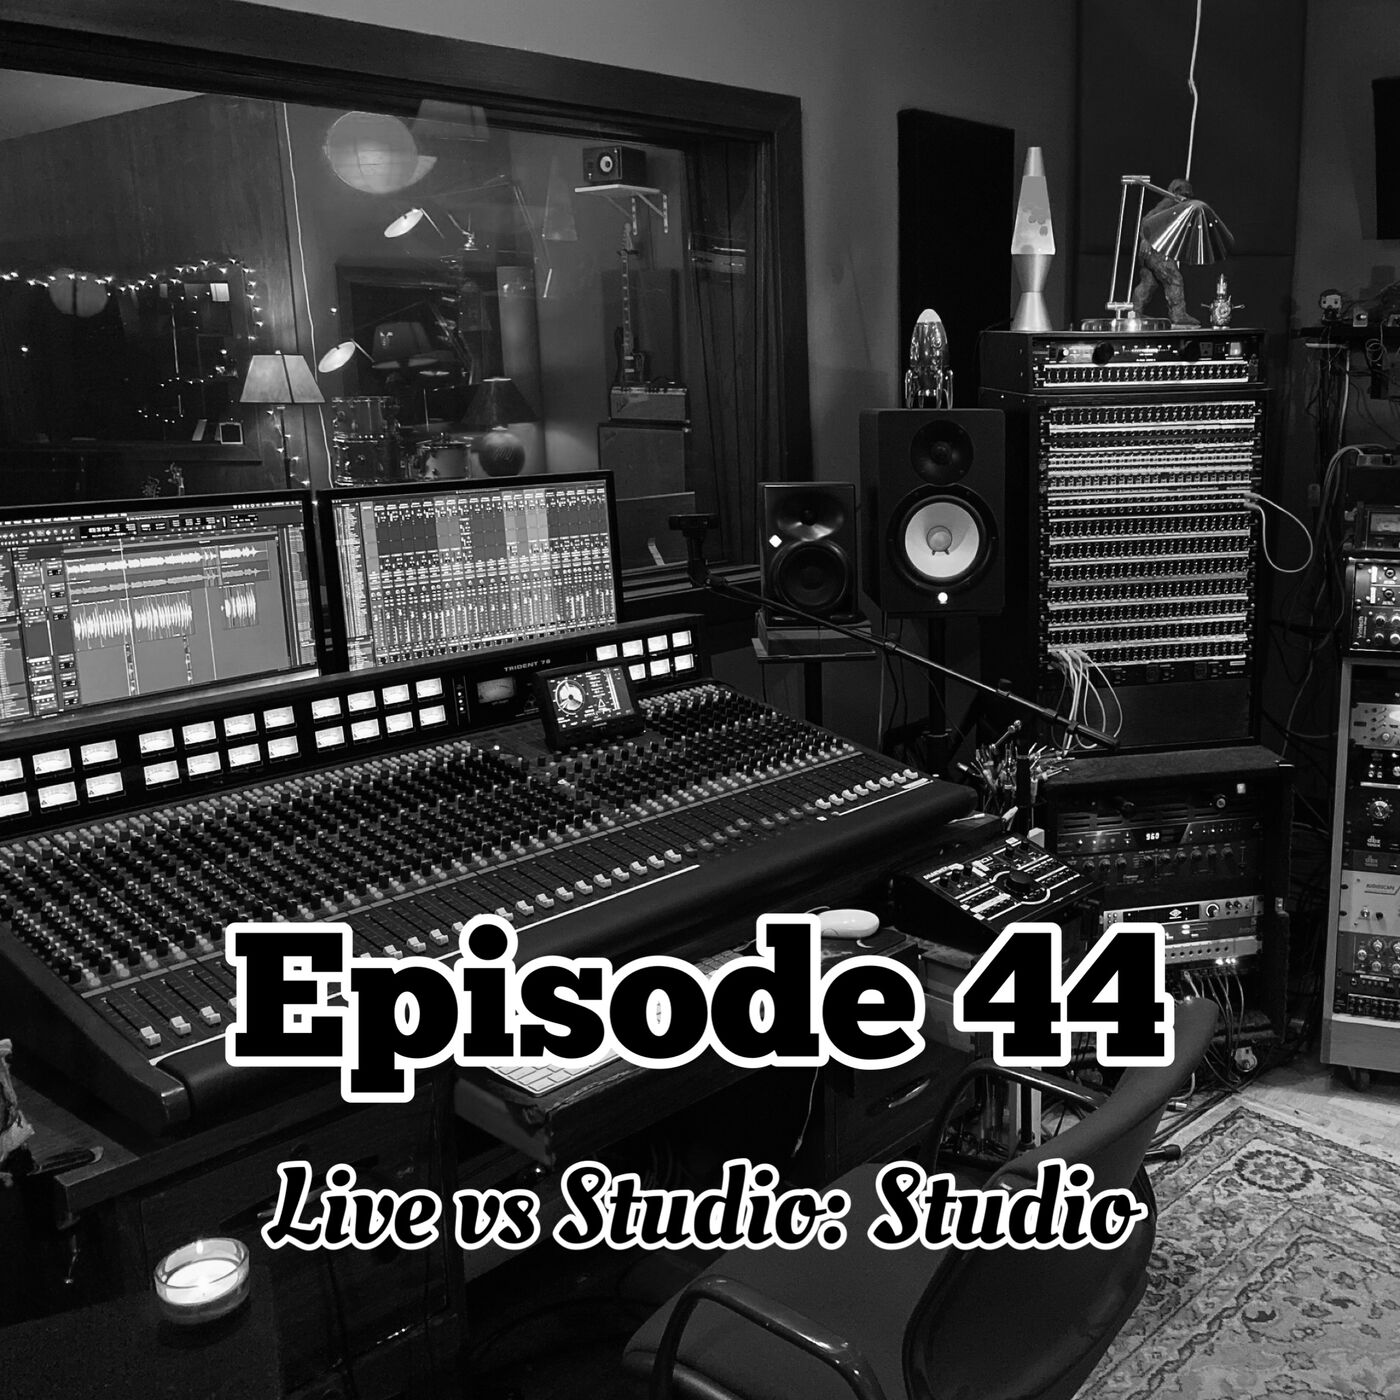 44. Studio vs Live: Studio